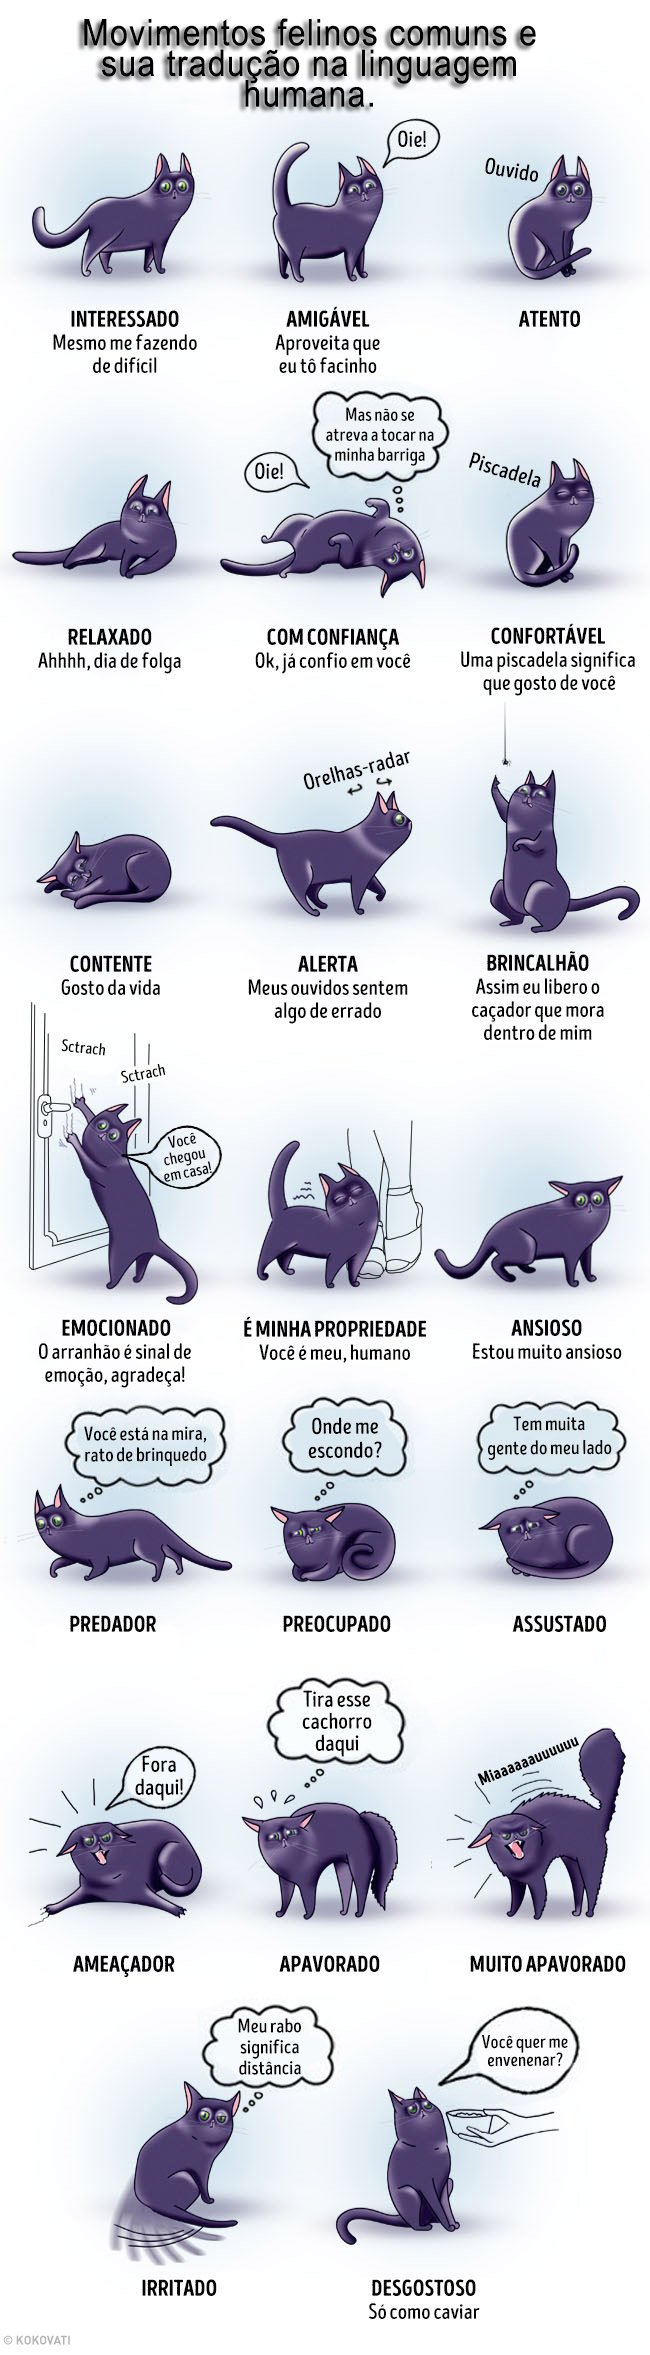 Movimentos felinos e suas traducoes na linguagem humana